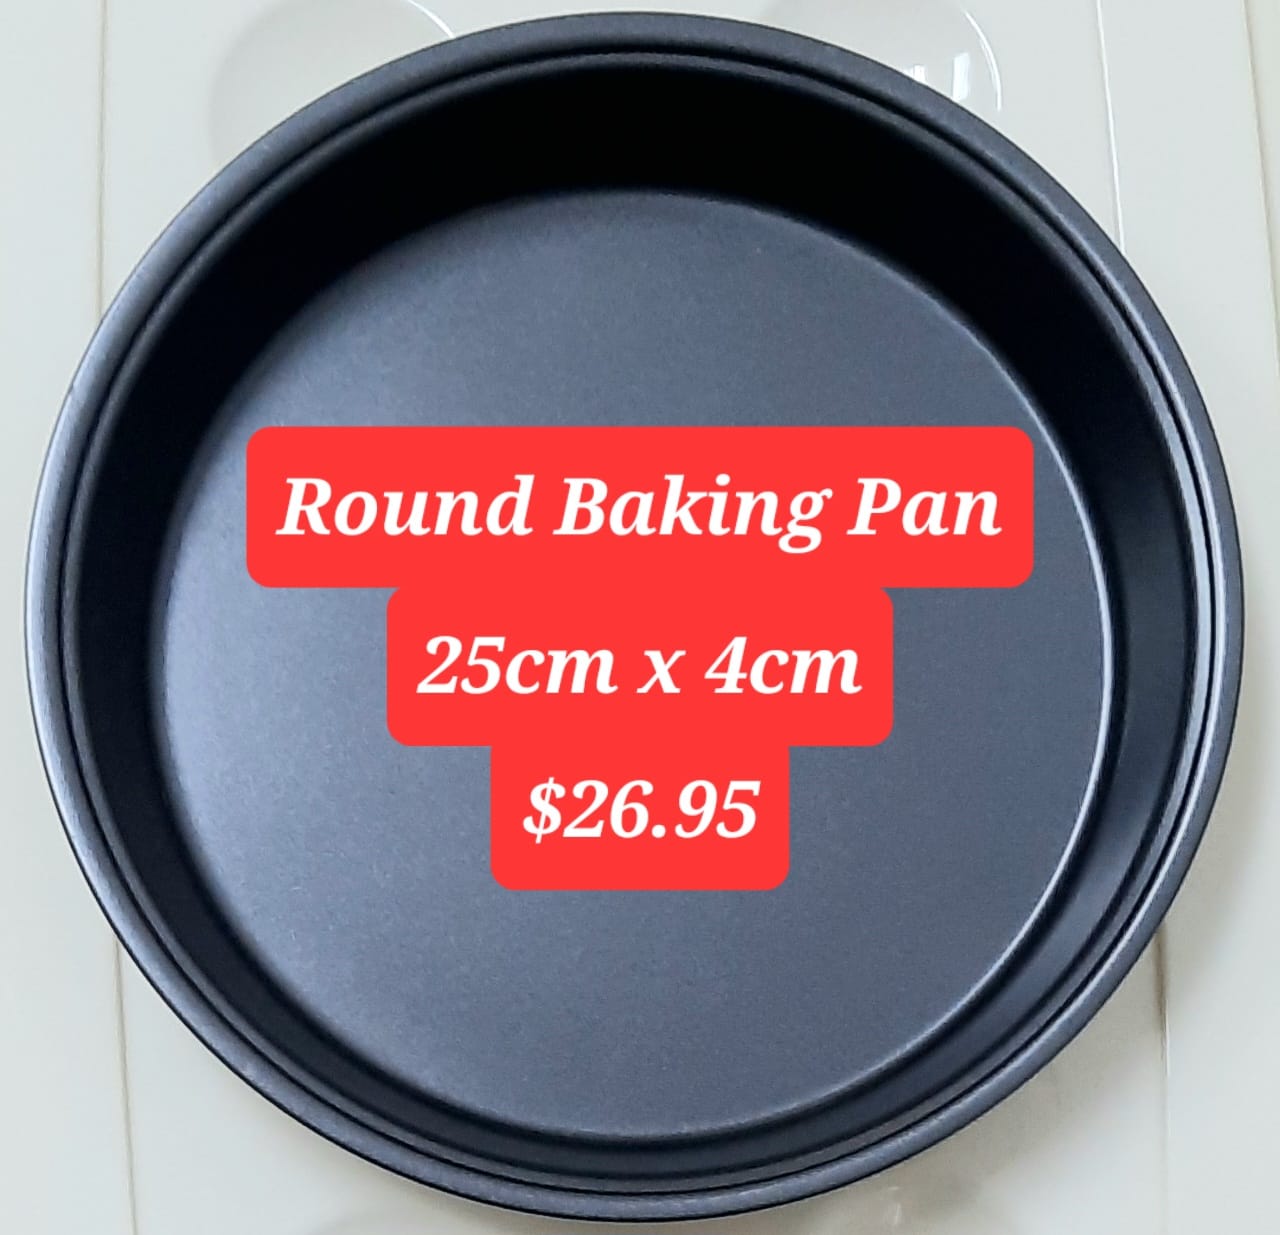 Round baking pan